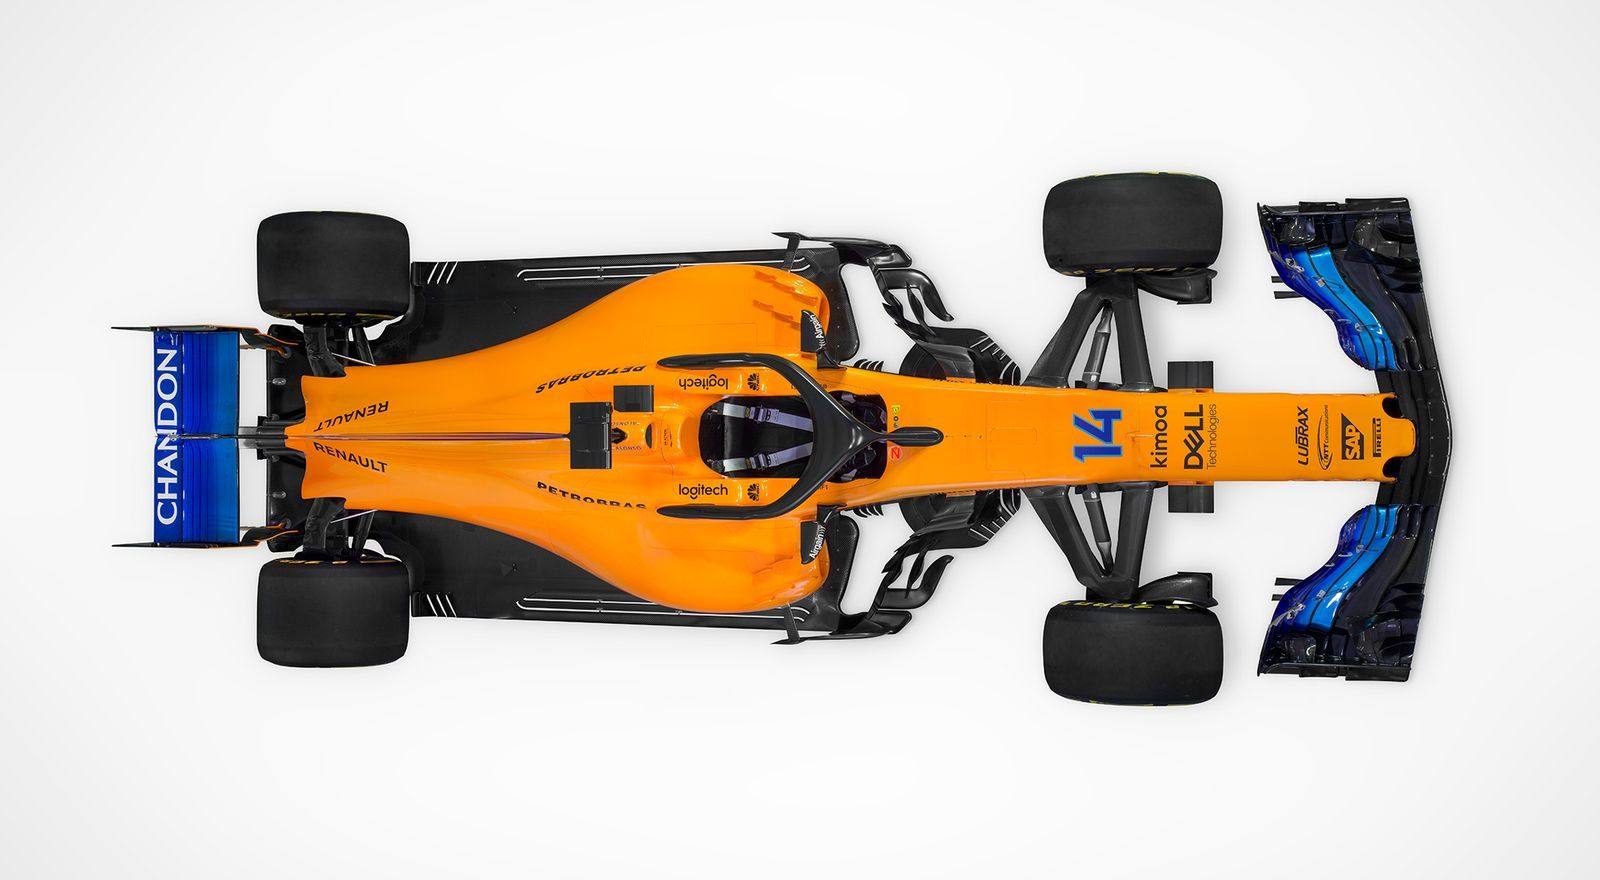 La escudería británica McLaren desveló hoy el MCL33, el monoplaza con el que el español Fernando Alonso y el belga Stoffel Vandoorne disputarán la nueva temporada de Fórmula Uno.